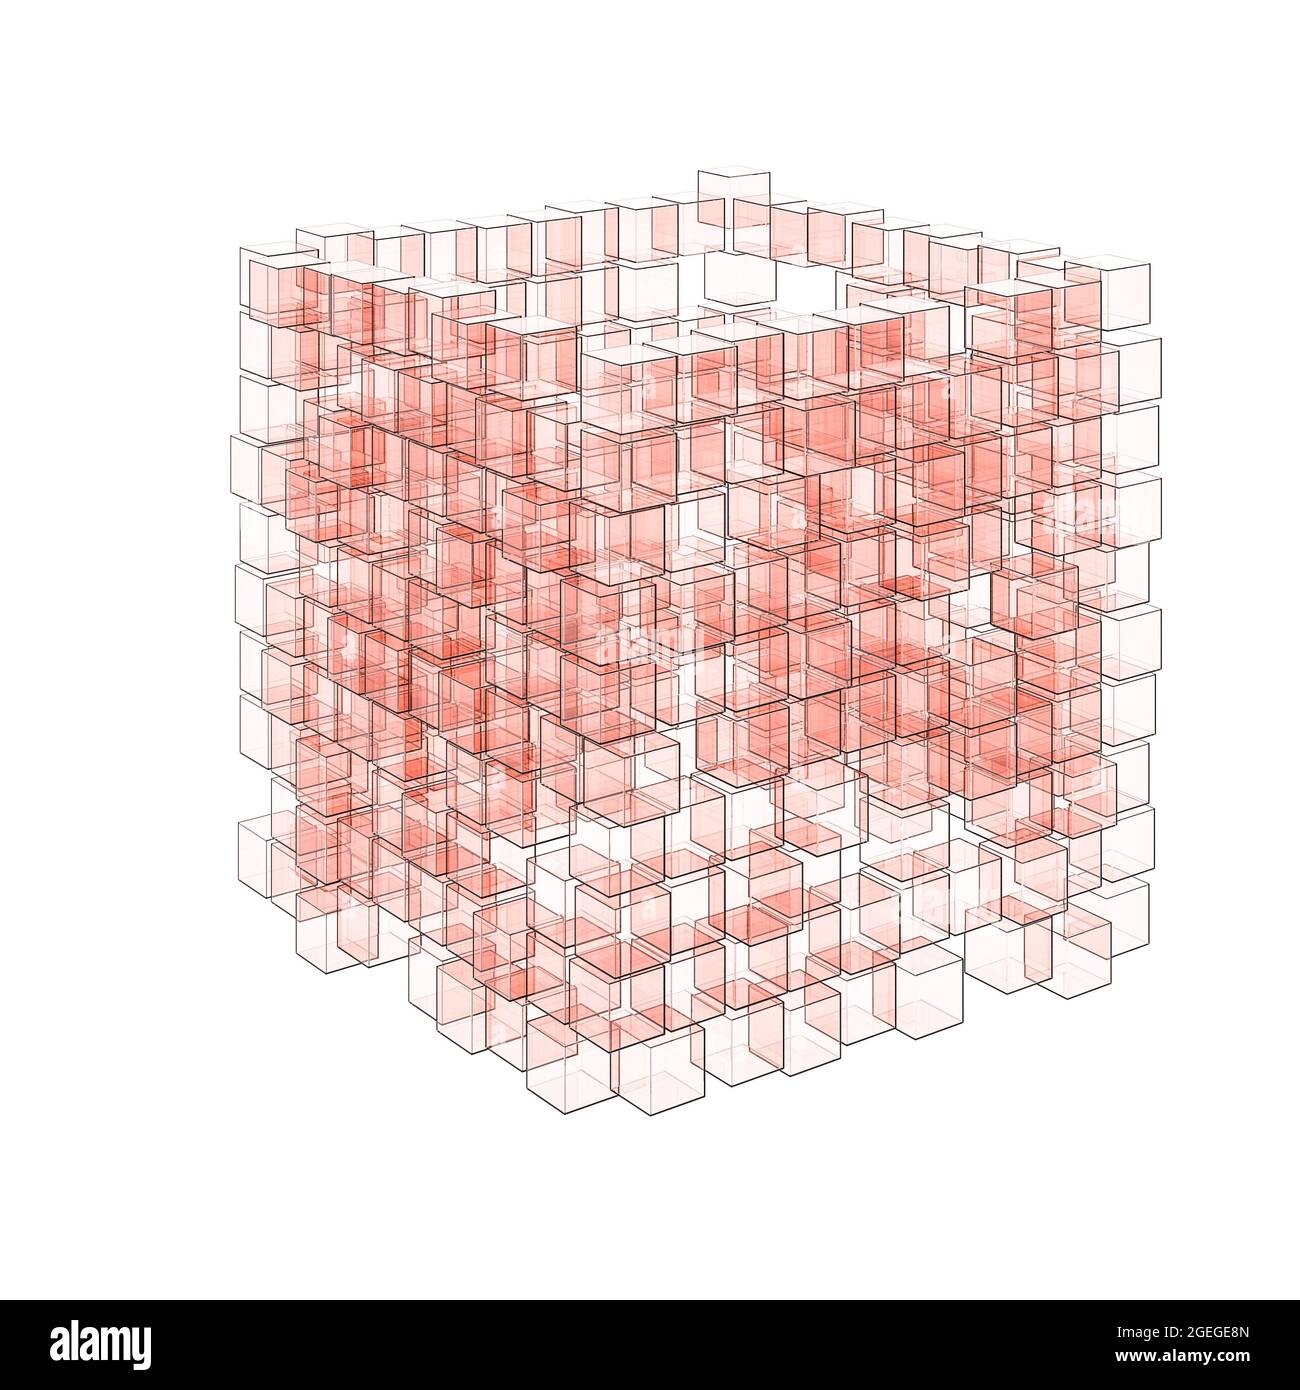 Un cube de cubes de verre rouge image abstraite. Certains cubes ont été déplacés. Réflexion, arrière-plan neutre. Concept de cube de données ou d'architecture. Banque D'Images